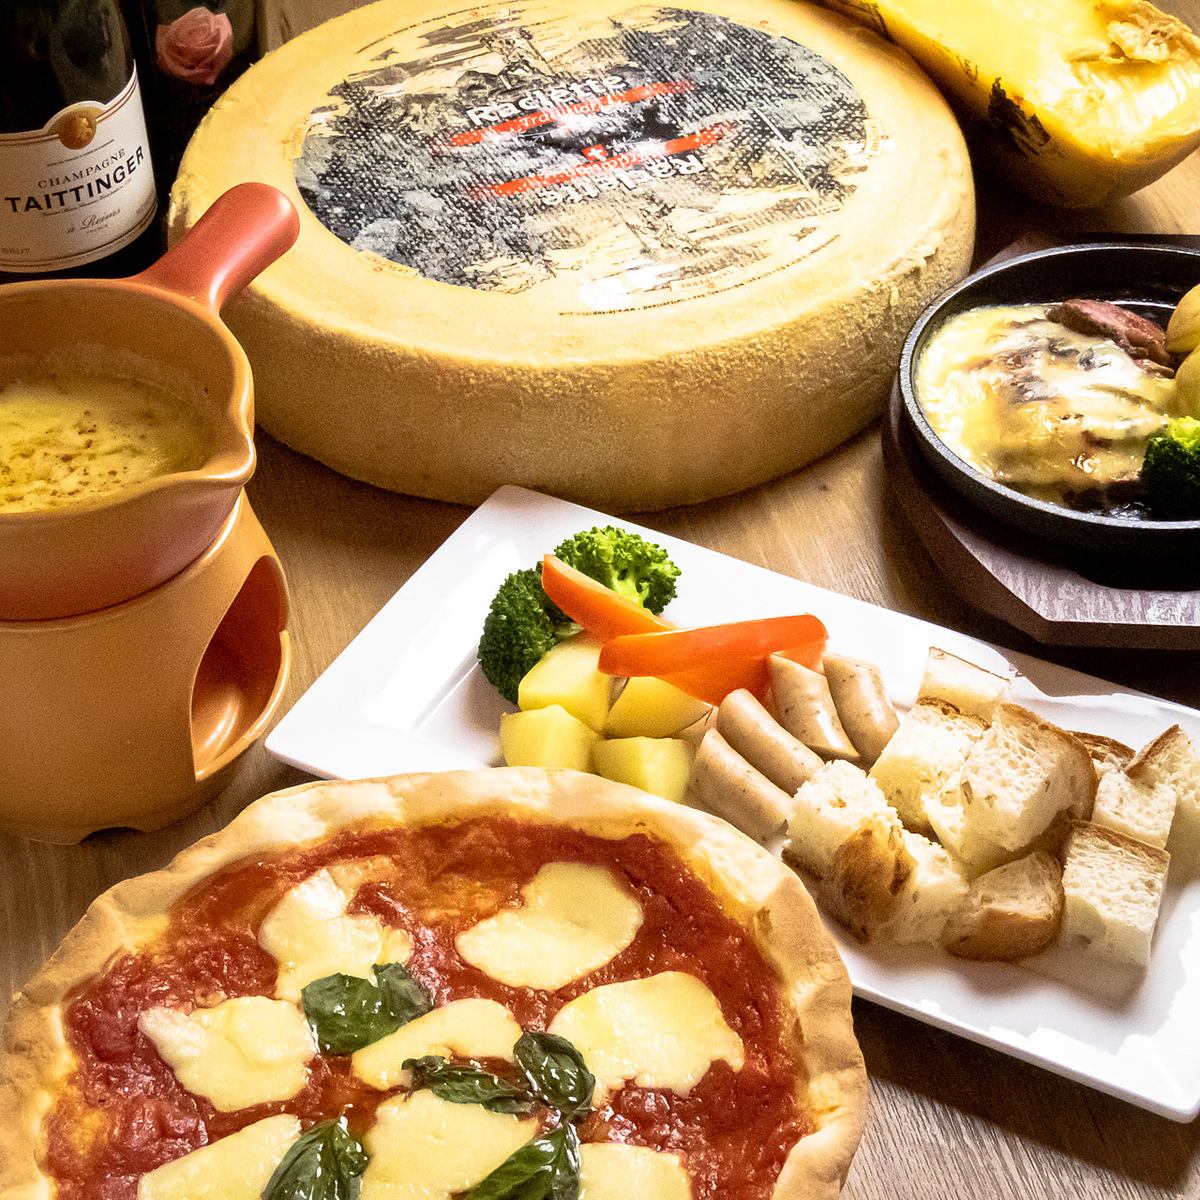 我们将提供融化您心中的奢华。享受真正的奶酪。